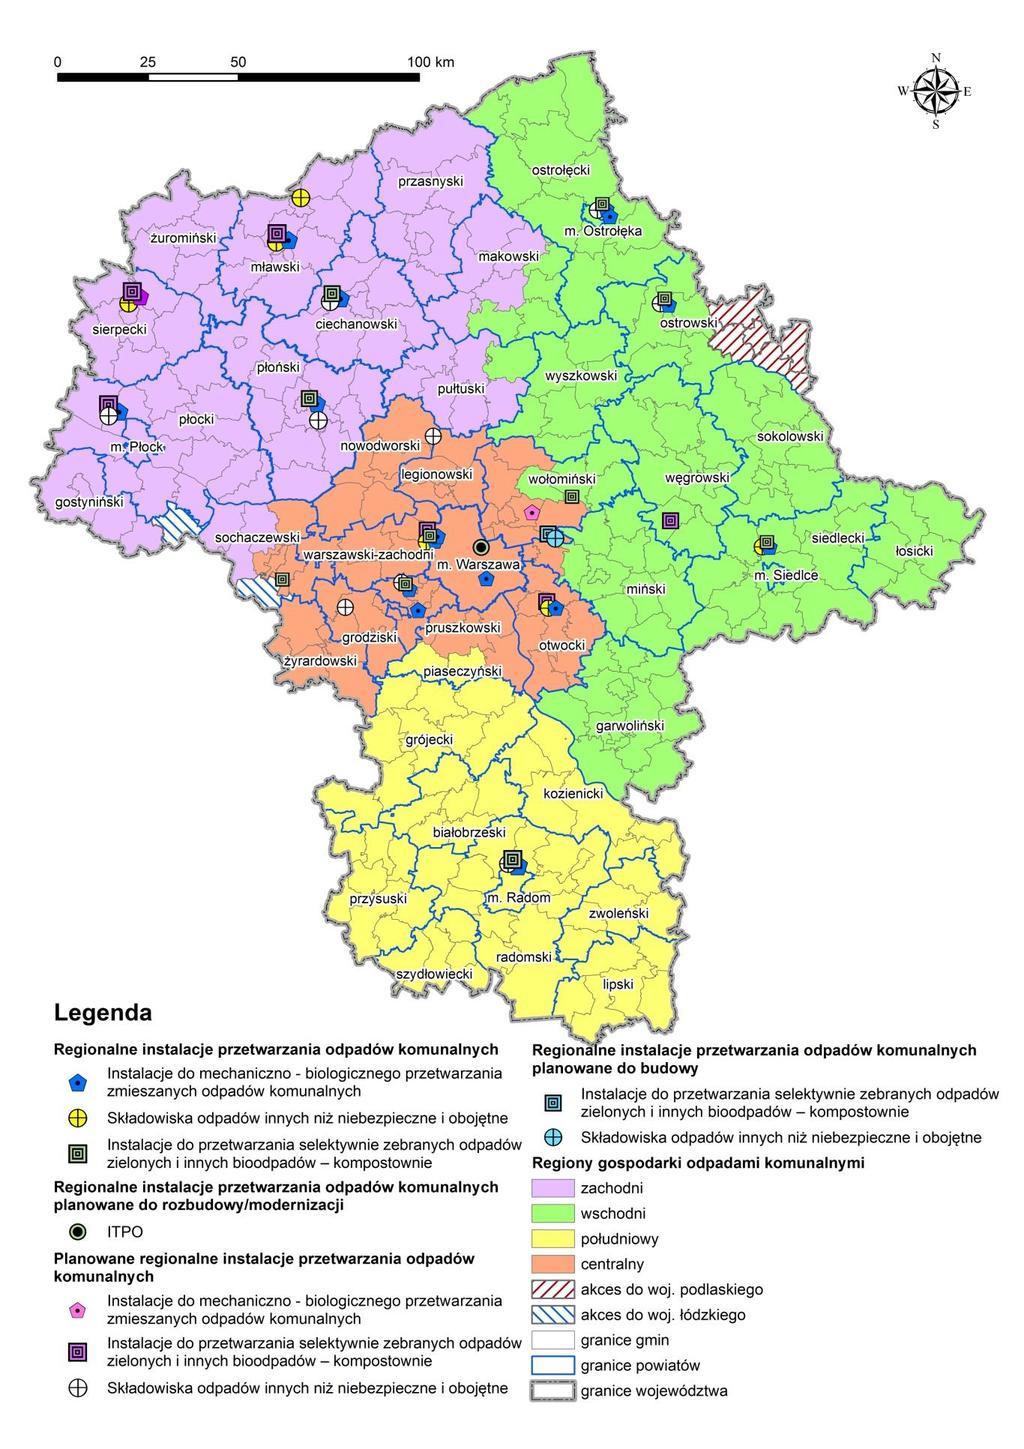 Mapa województwa mazowieckiego z podziałem na regiony gospodarki odpadami komunalnymi oraz wykazem instalacji regionalnych istniejących